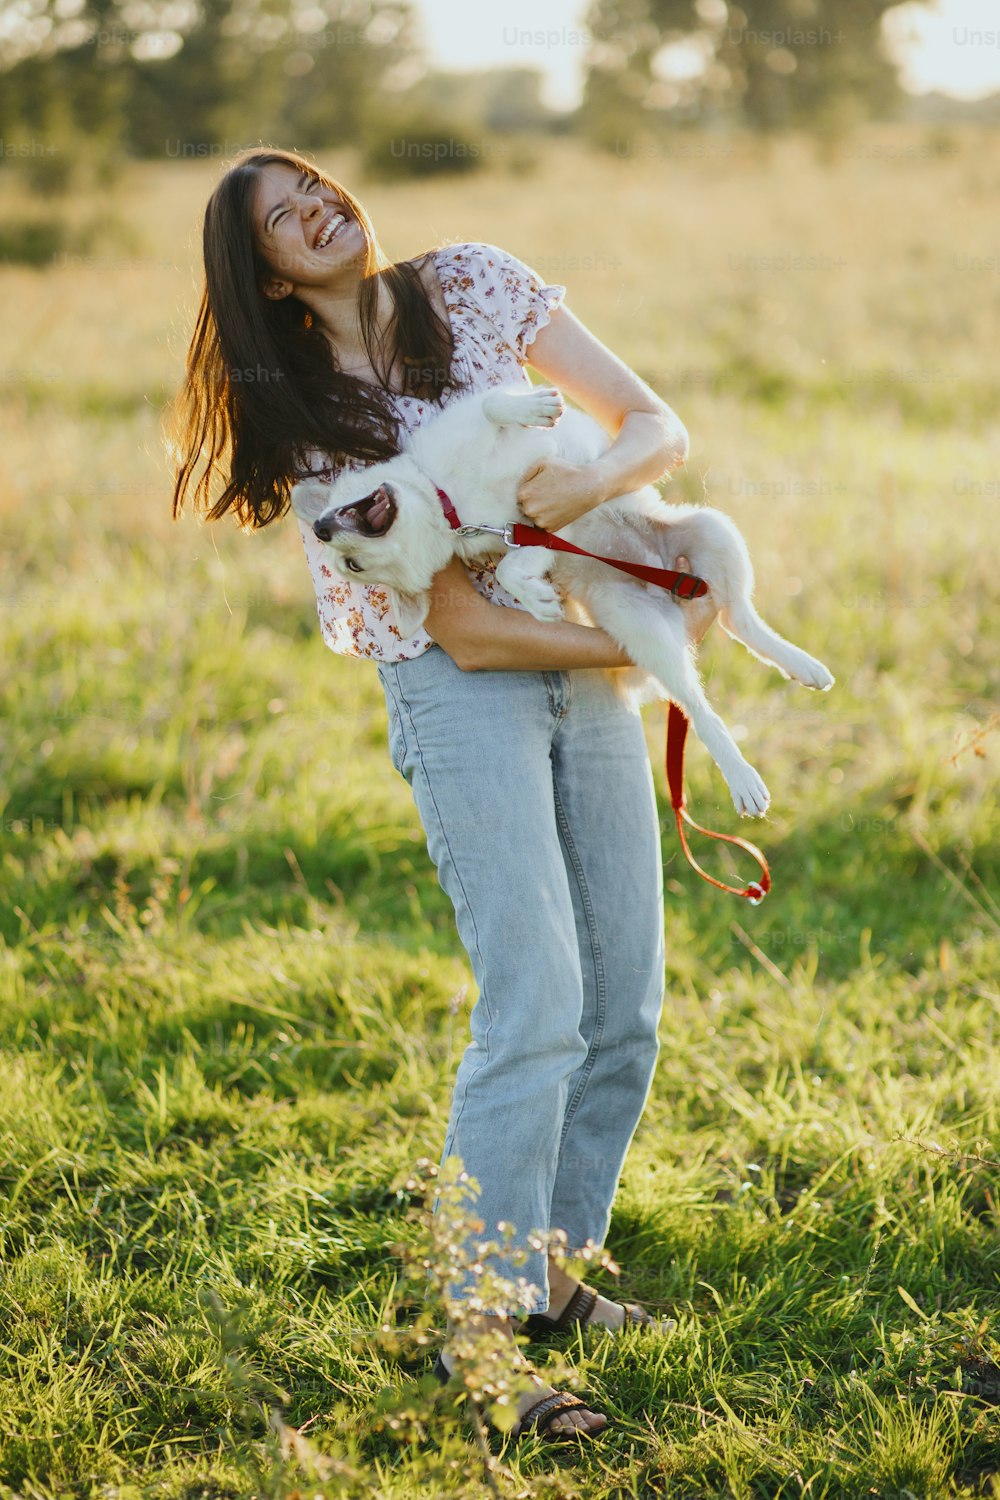 여름 초원의 따뜻한 일몰 빛 속에서 귀여운 하얀 강아지와 놀고 있는 세련된 행복한 여자. 캐주얼한 젊은 여성이 웃고 미친 활동적인 스위스 양치기 강아지를 안고 있다. 재미있는 순간들